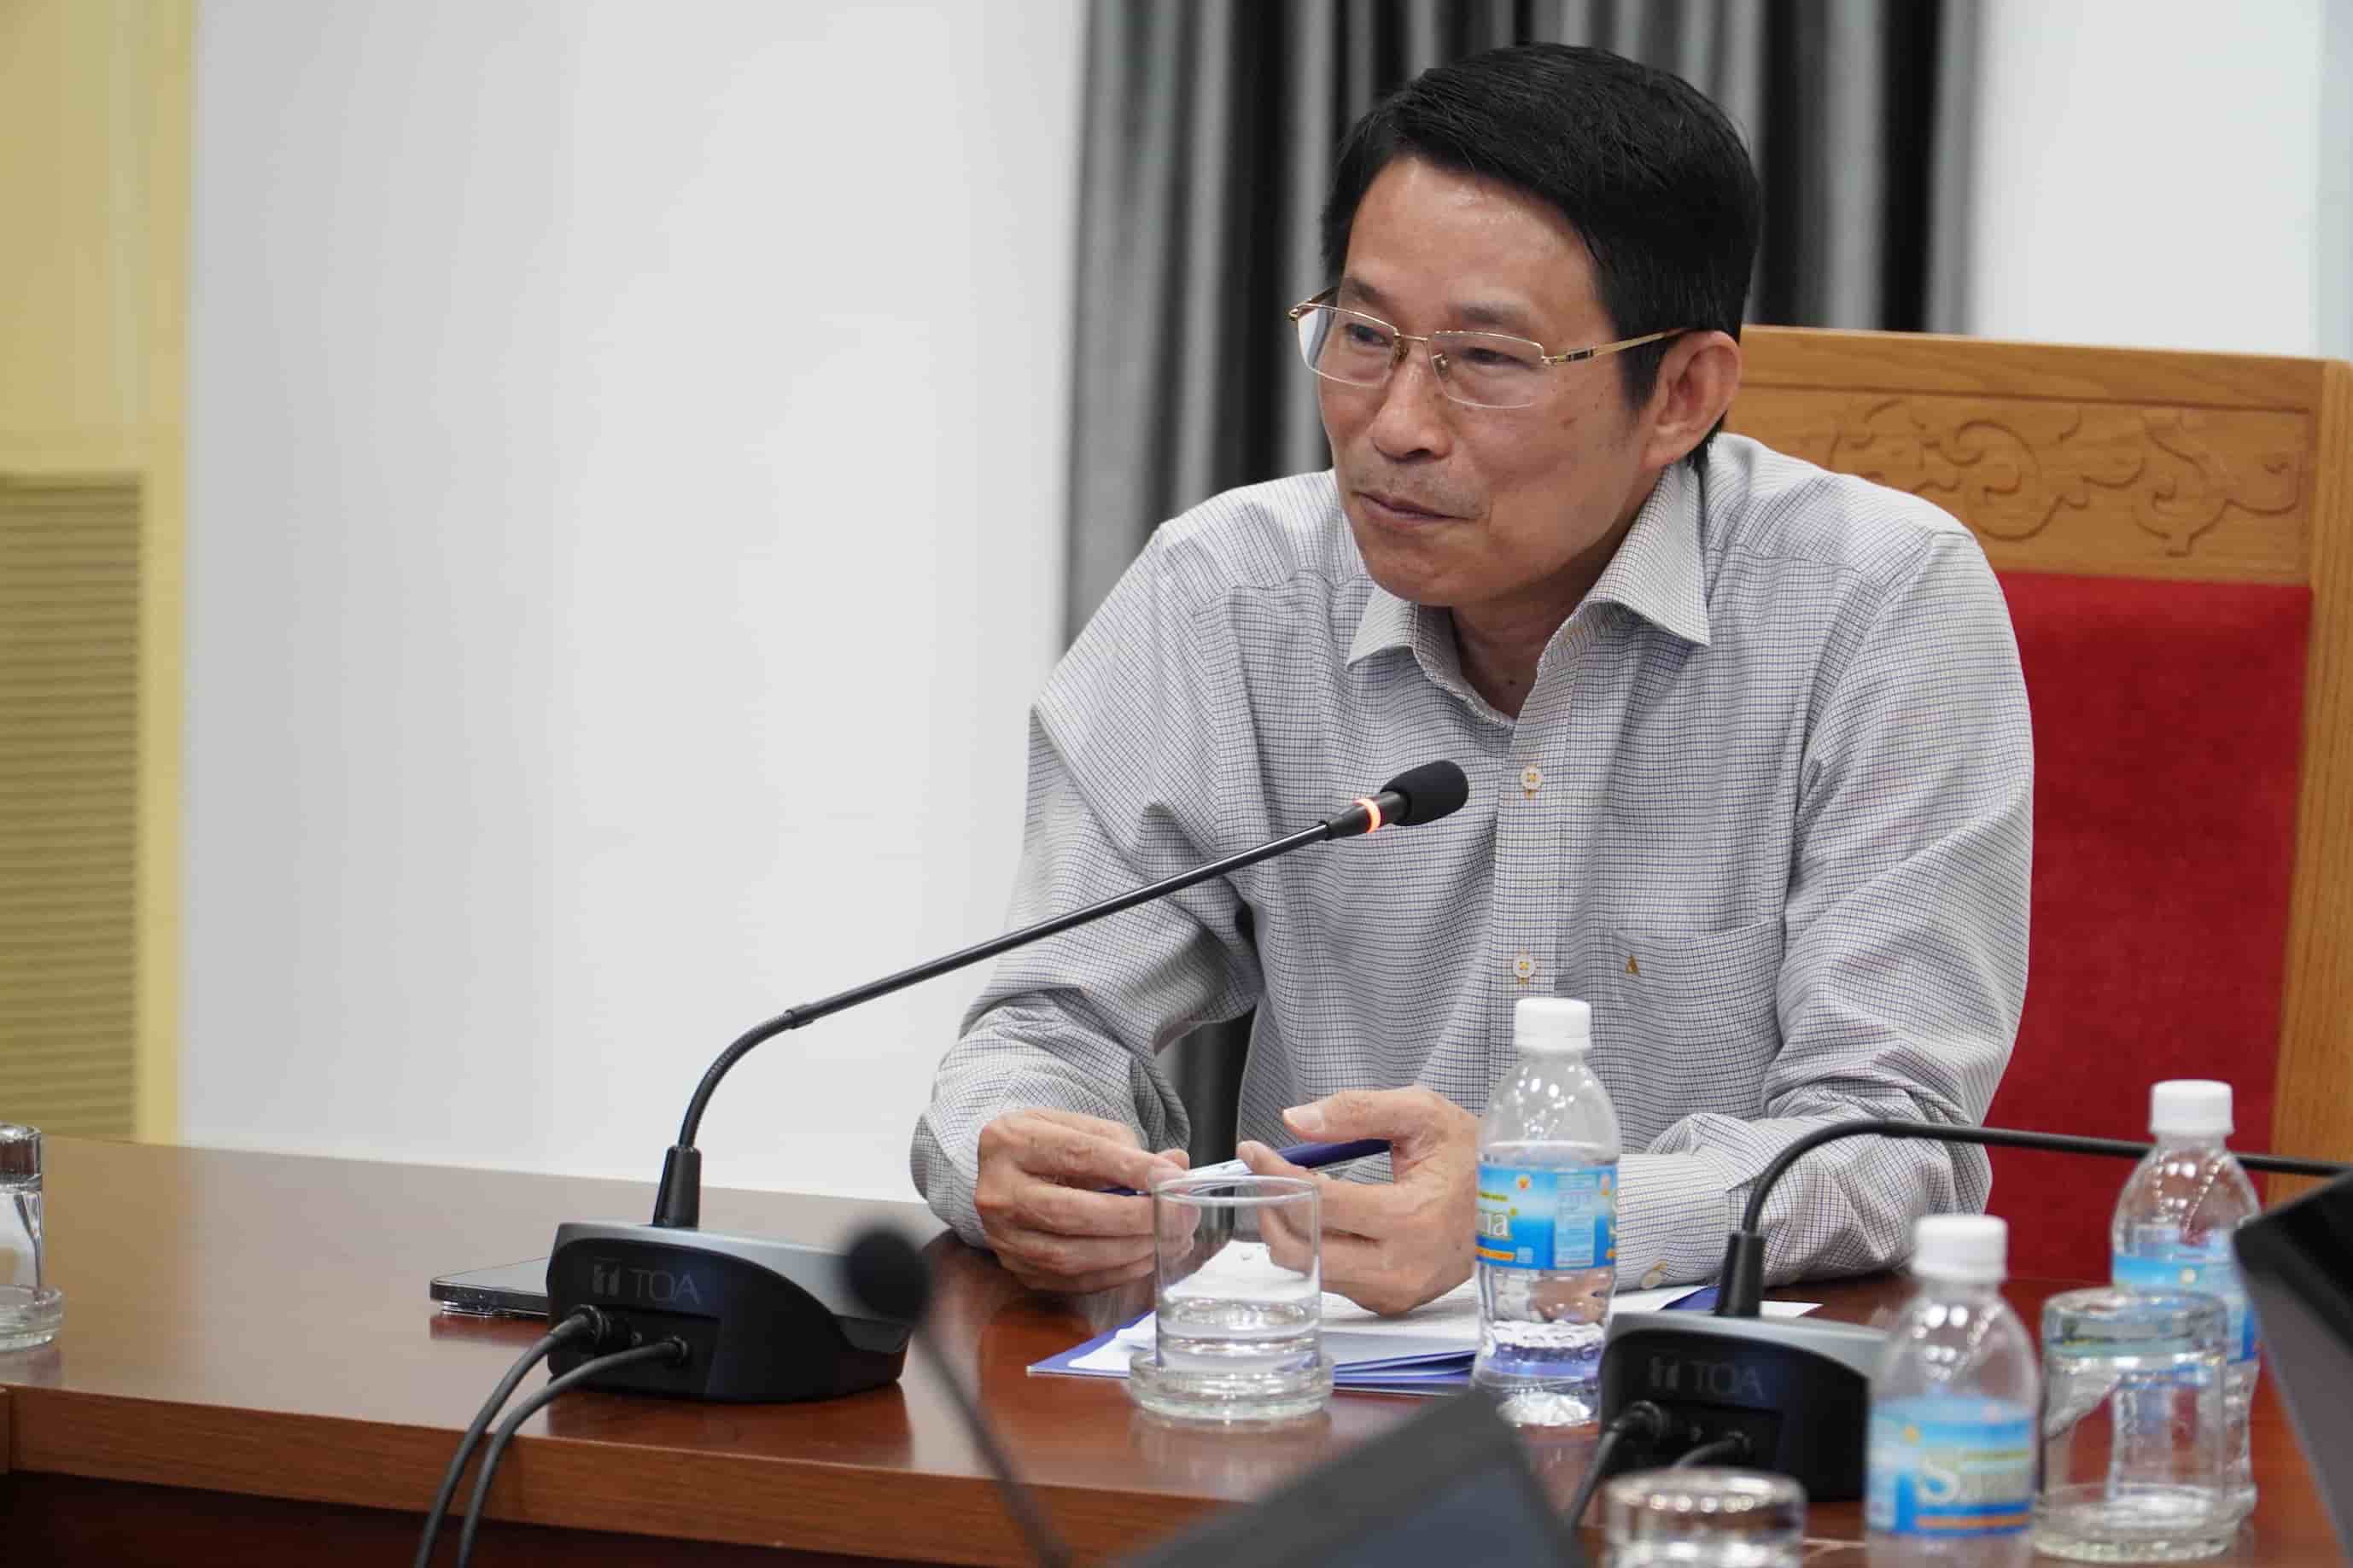 Ông Đinh Văn Thiệu chủ trì một cuộc họp về công tác vệ sinh, an toàn thực phẩm tại Khánh Hòa. Ảnh: Hữu Long